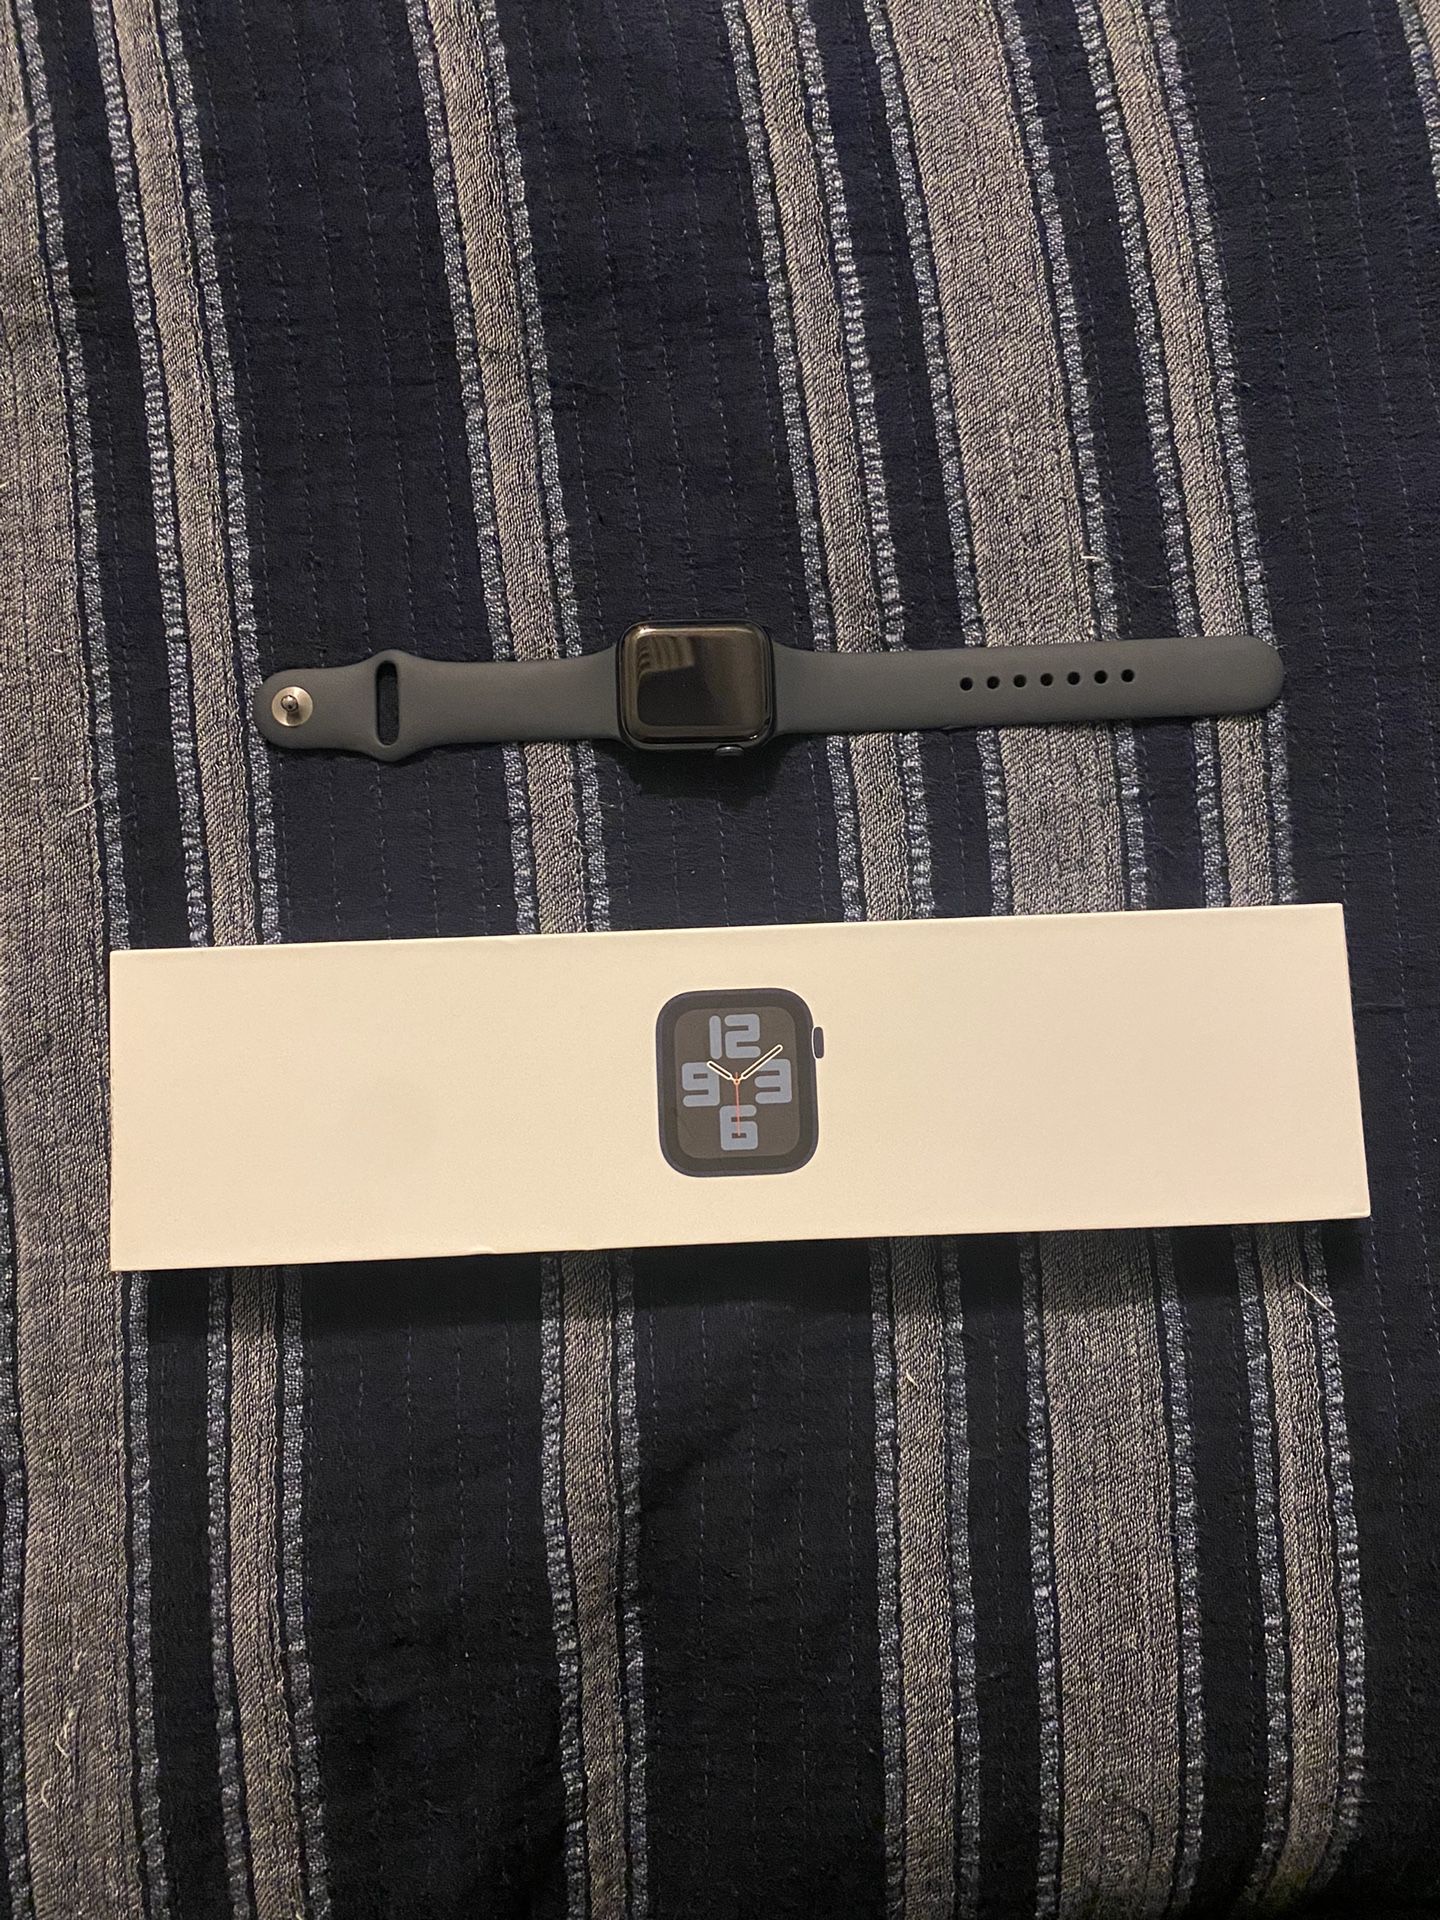 Apple SE 2 Watch 